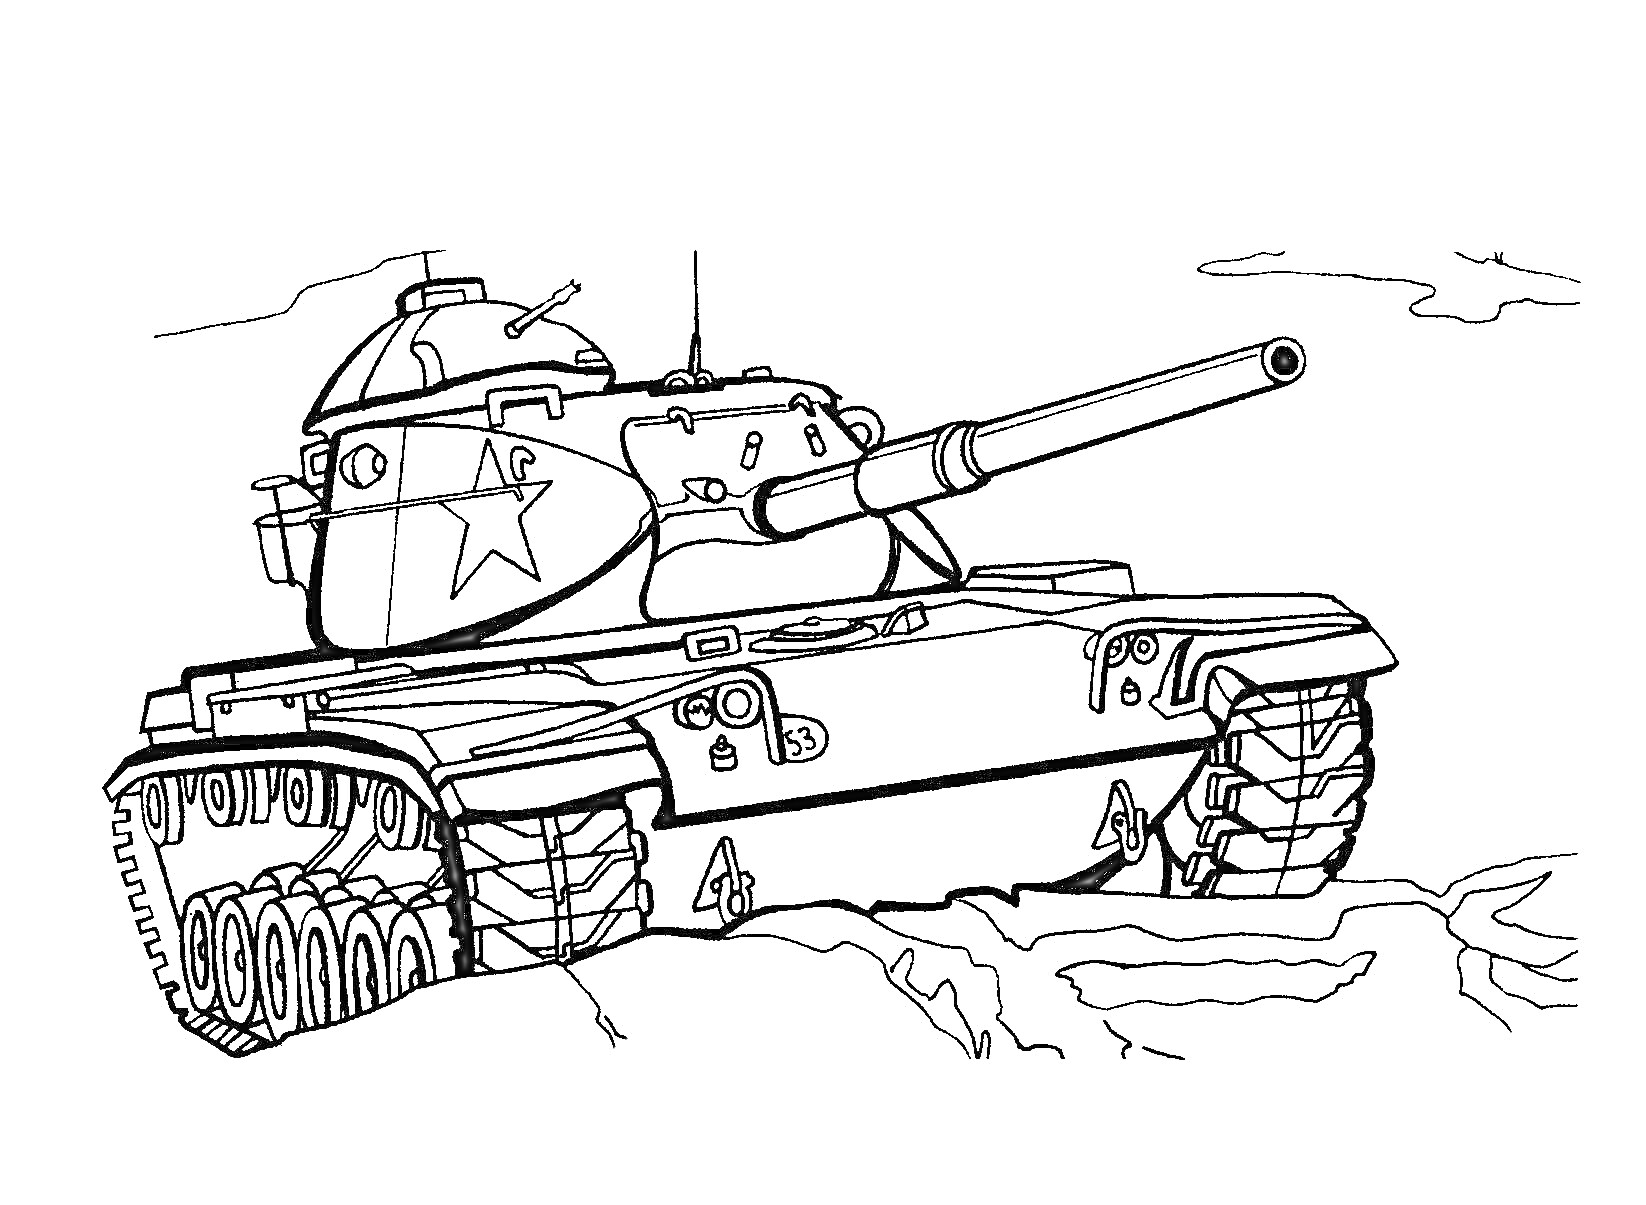 Раскраска Танковый бой, на переднем плане танк с крупной пушкой, гусеницами и звездами на корпусе, на фоне облака и поле битвы